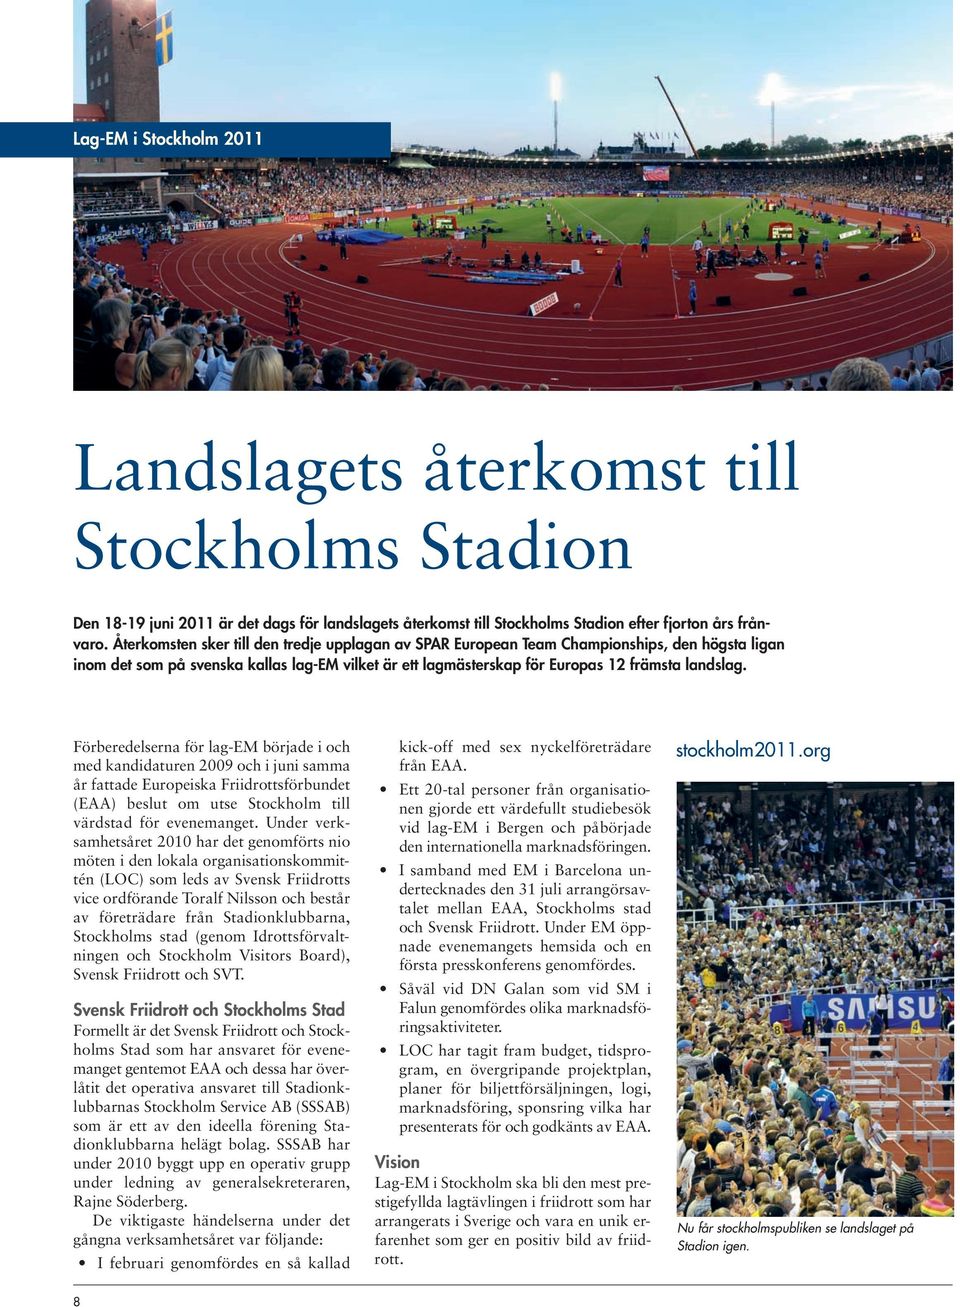 Förberedelserna för lag-em började i och med kandidaturen 2009 och i juni samma år fattade Europeiska Friidrottsförbundet (EAA) beslut om utse Stockholm till värdstad för evenemanget.